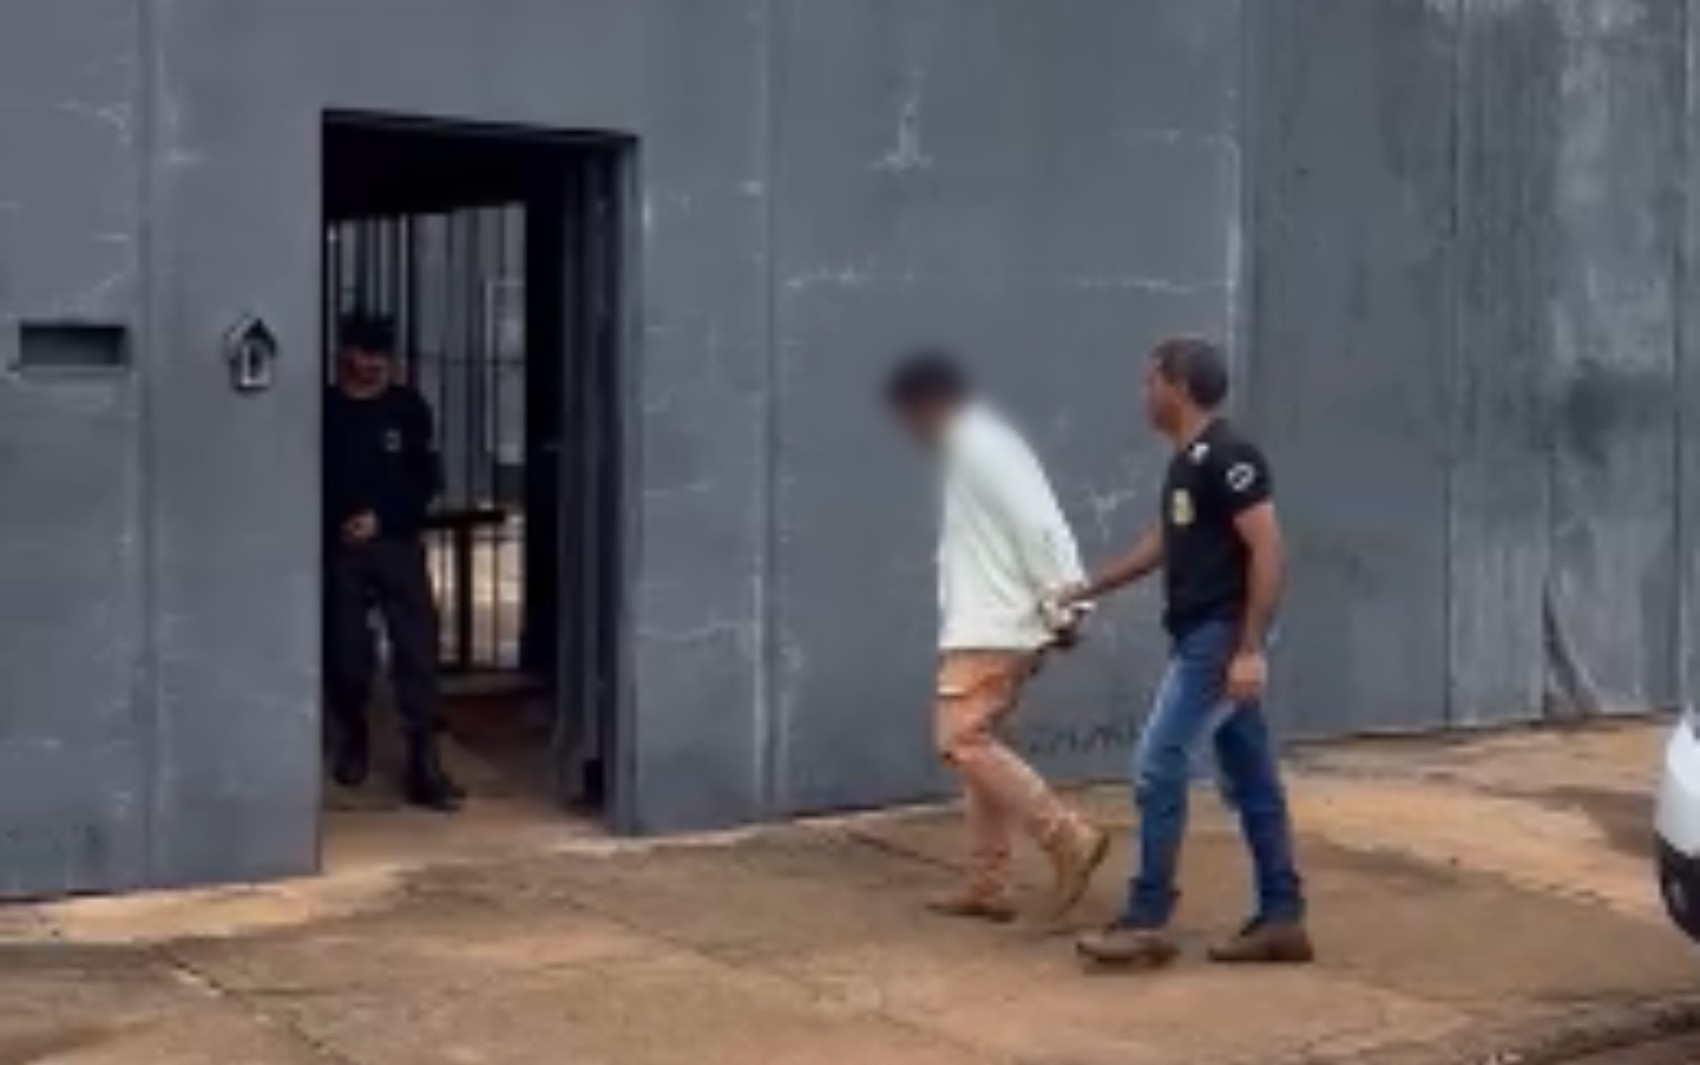 Homem é preso suspeito de sequestrar a ex com ajuda de dois comparsas e a agredir, em Goiás